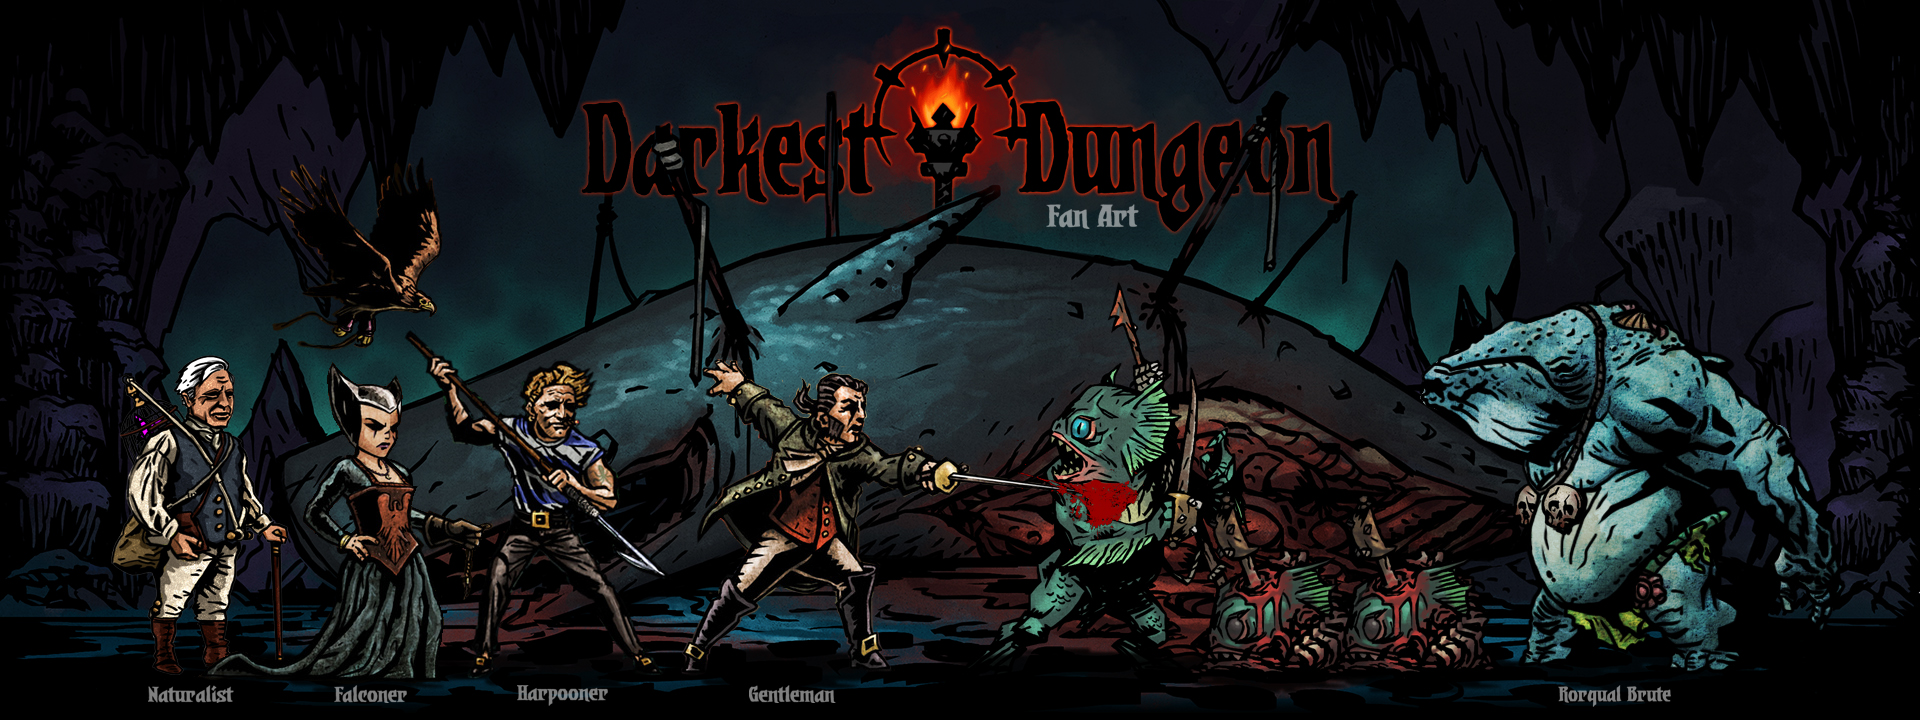 darkest dungeon 2 new character